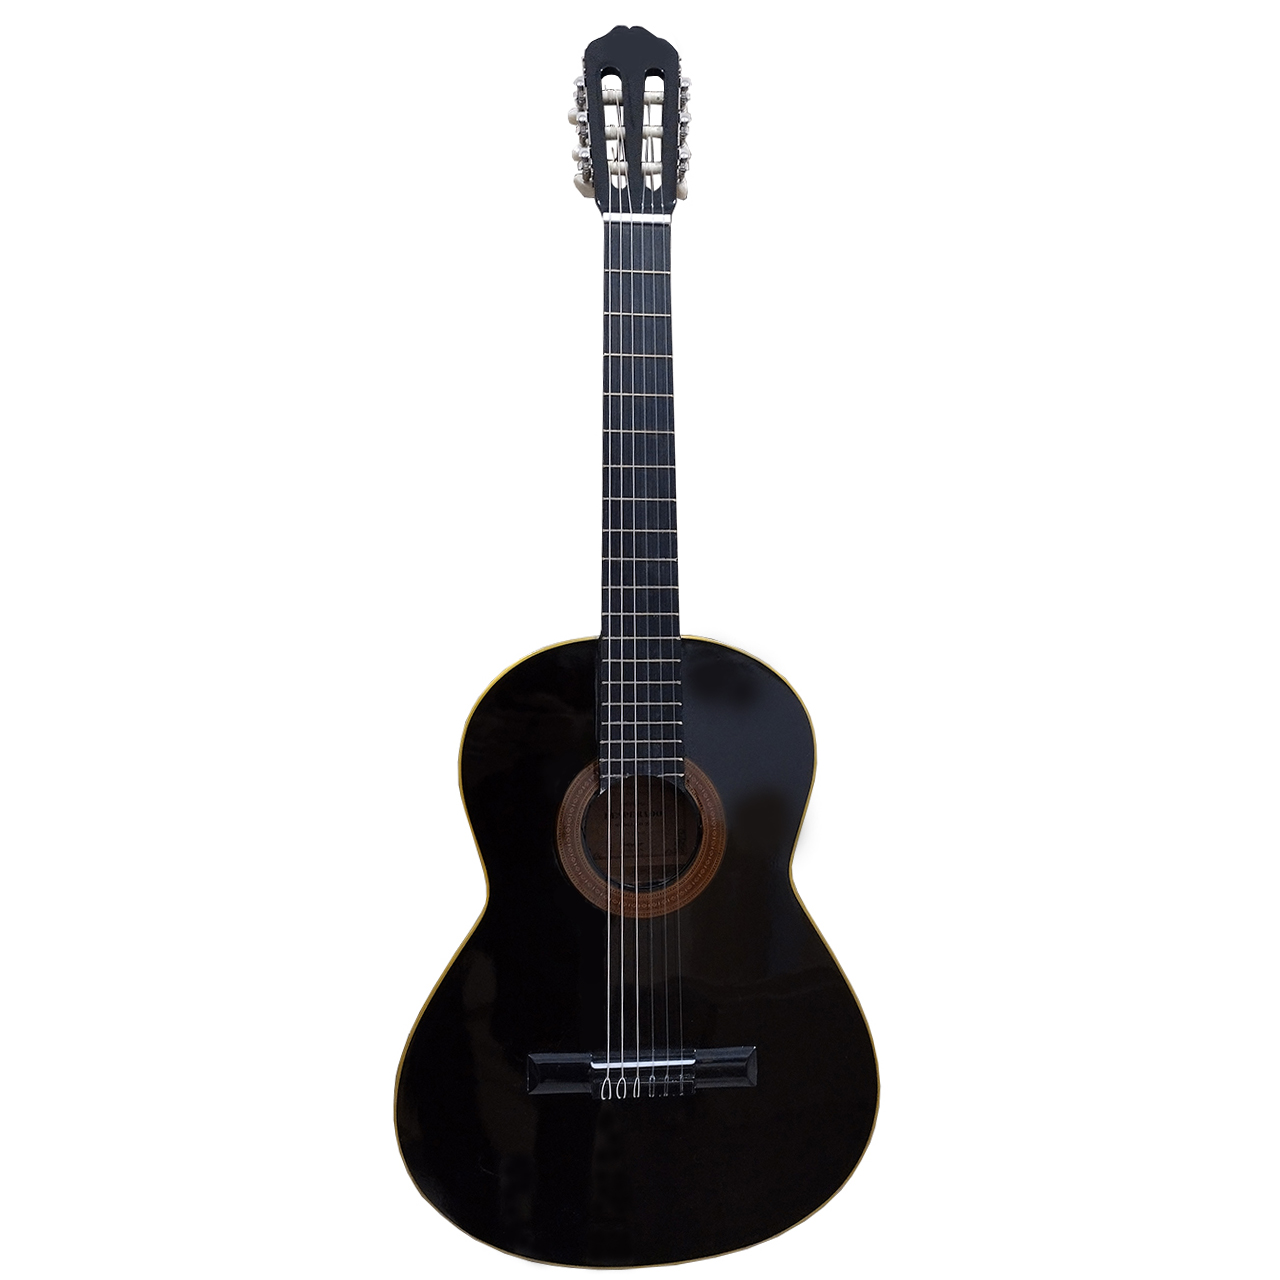 نکته خرید - قیمت روز گیتار دسپرادو مدل Z1 خرید